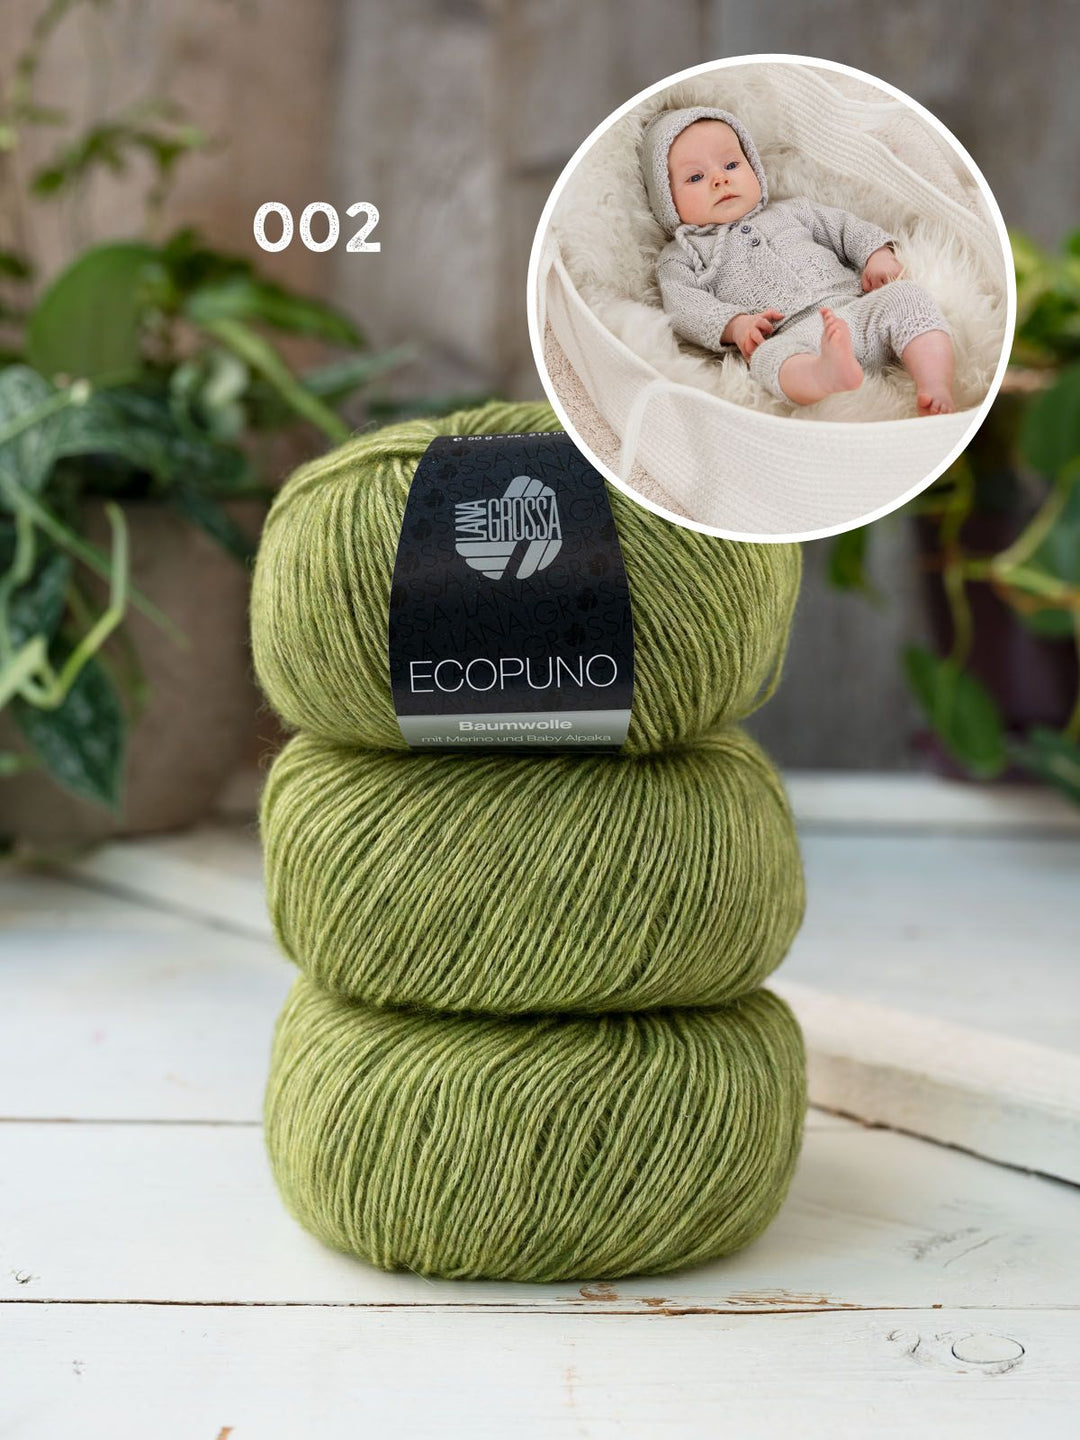 Breipakket Ecopuno set voor baby's